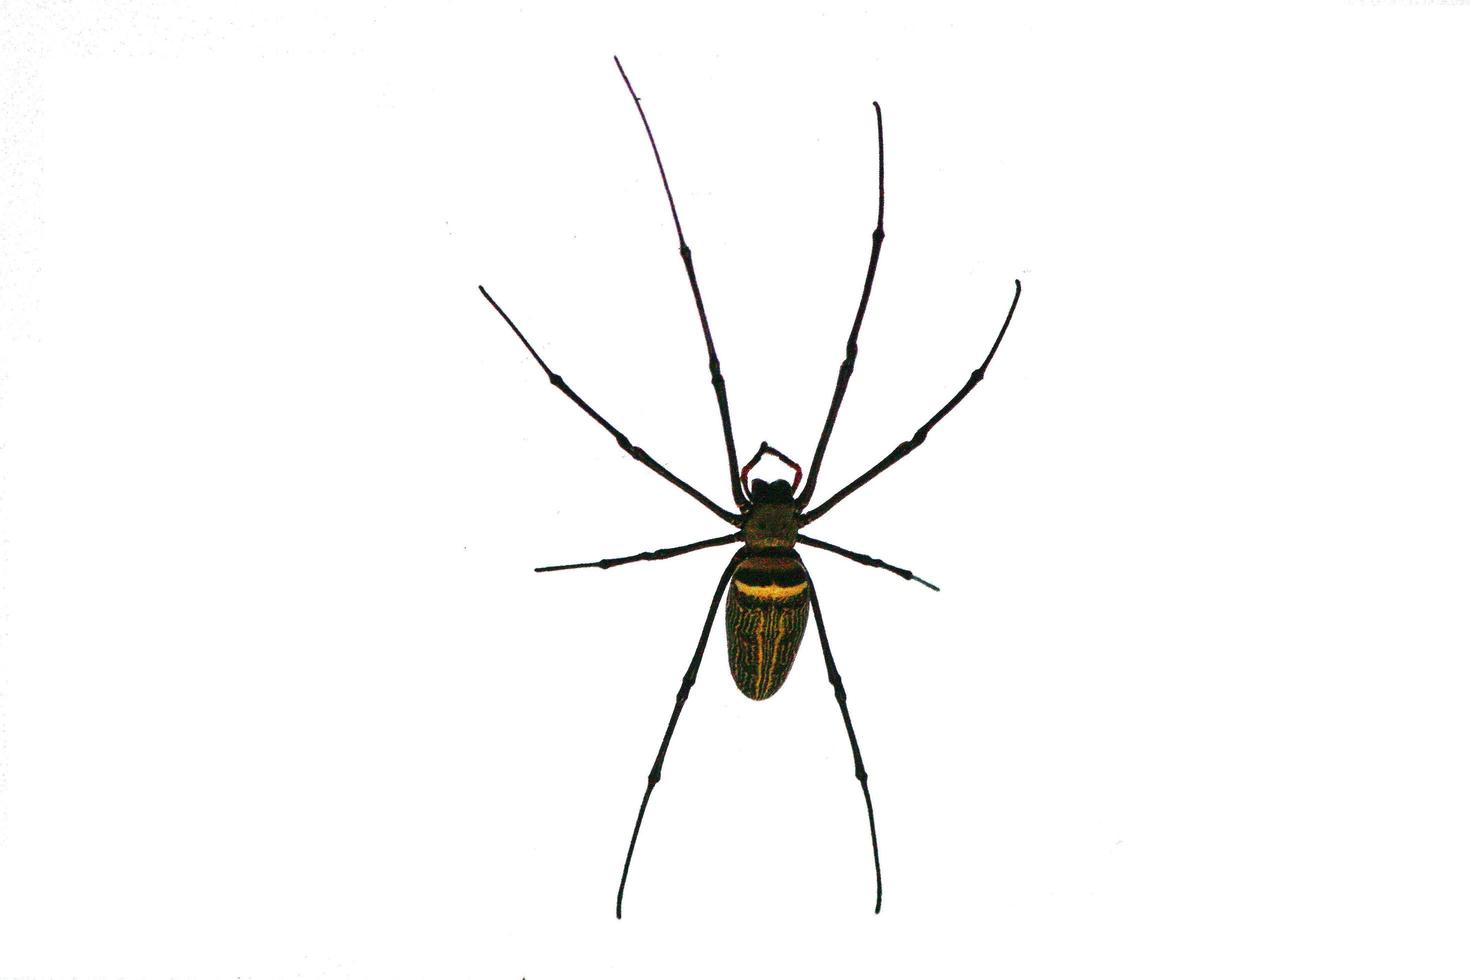 Spider on isolated white background.Argiope bruennichi spider photo